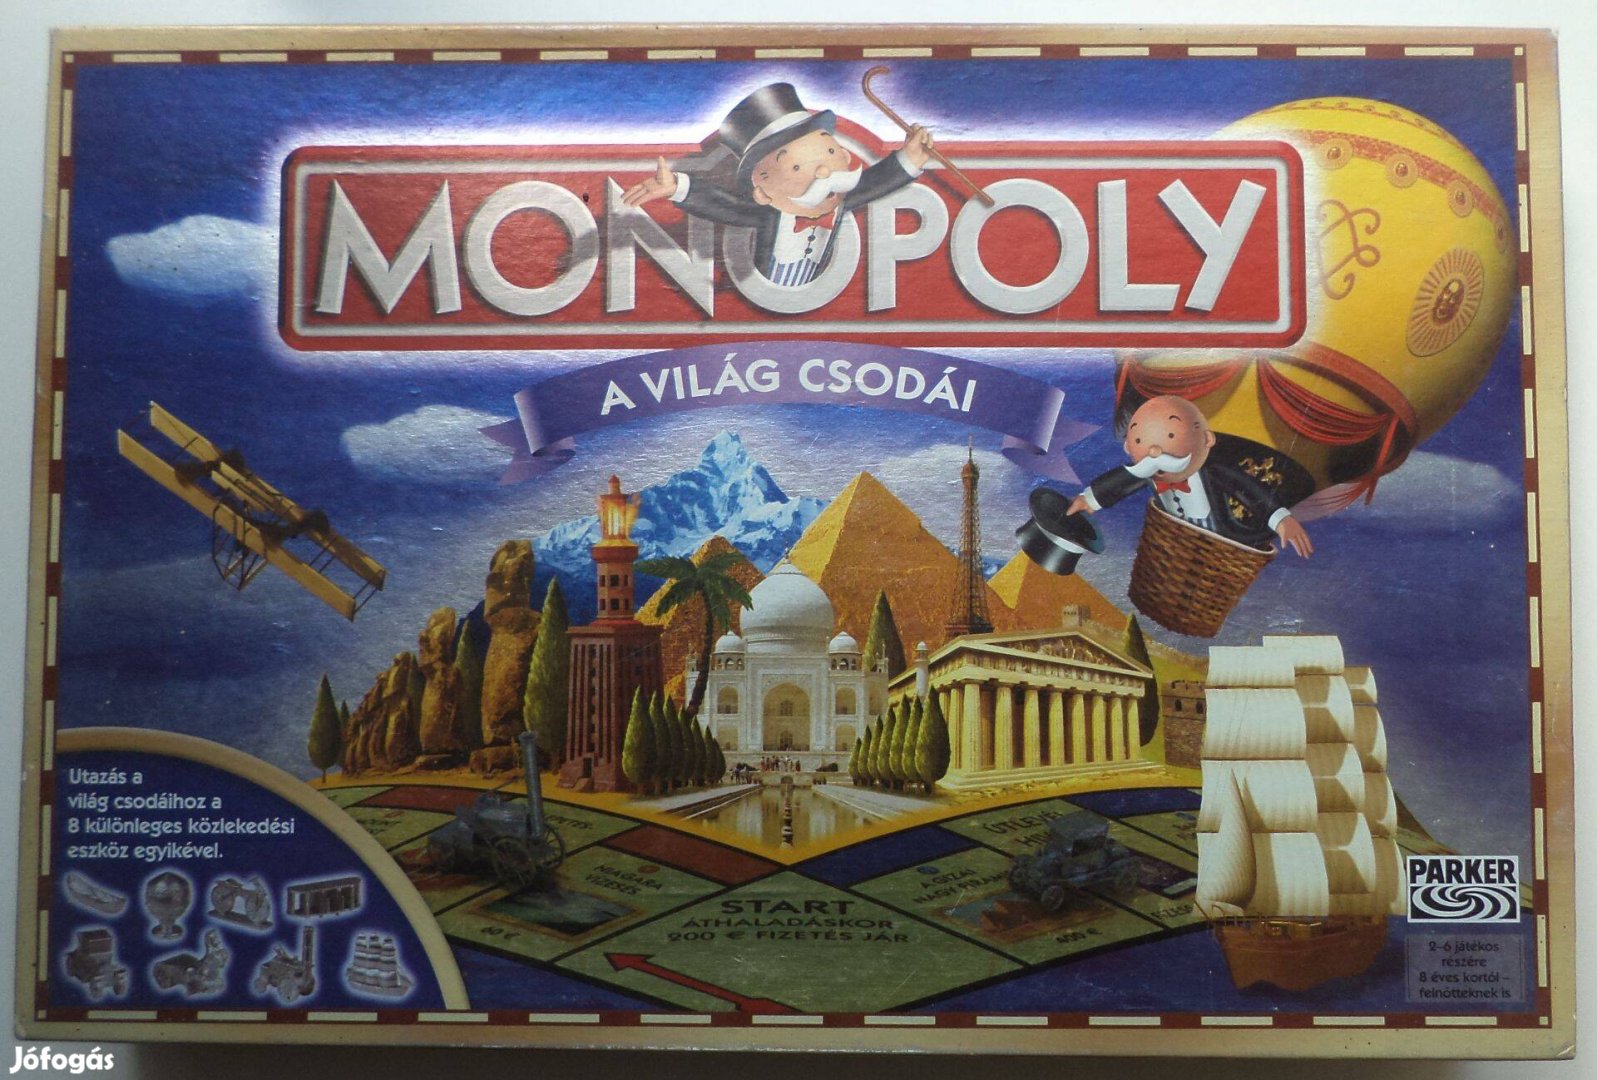 Monopoly,a világ csodái /társasjáték,hiánytalan/